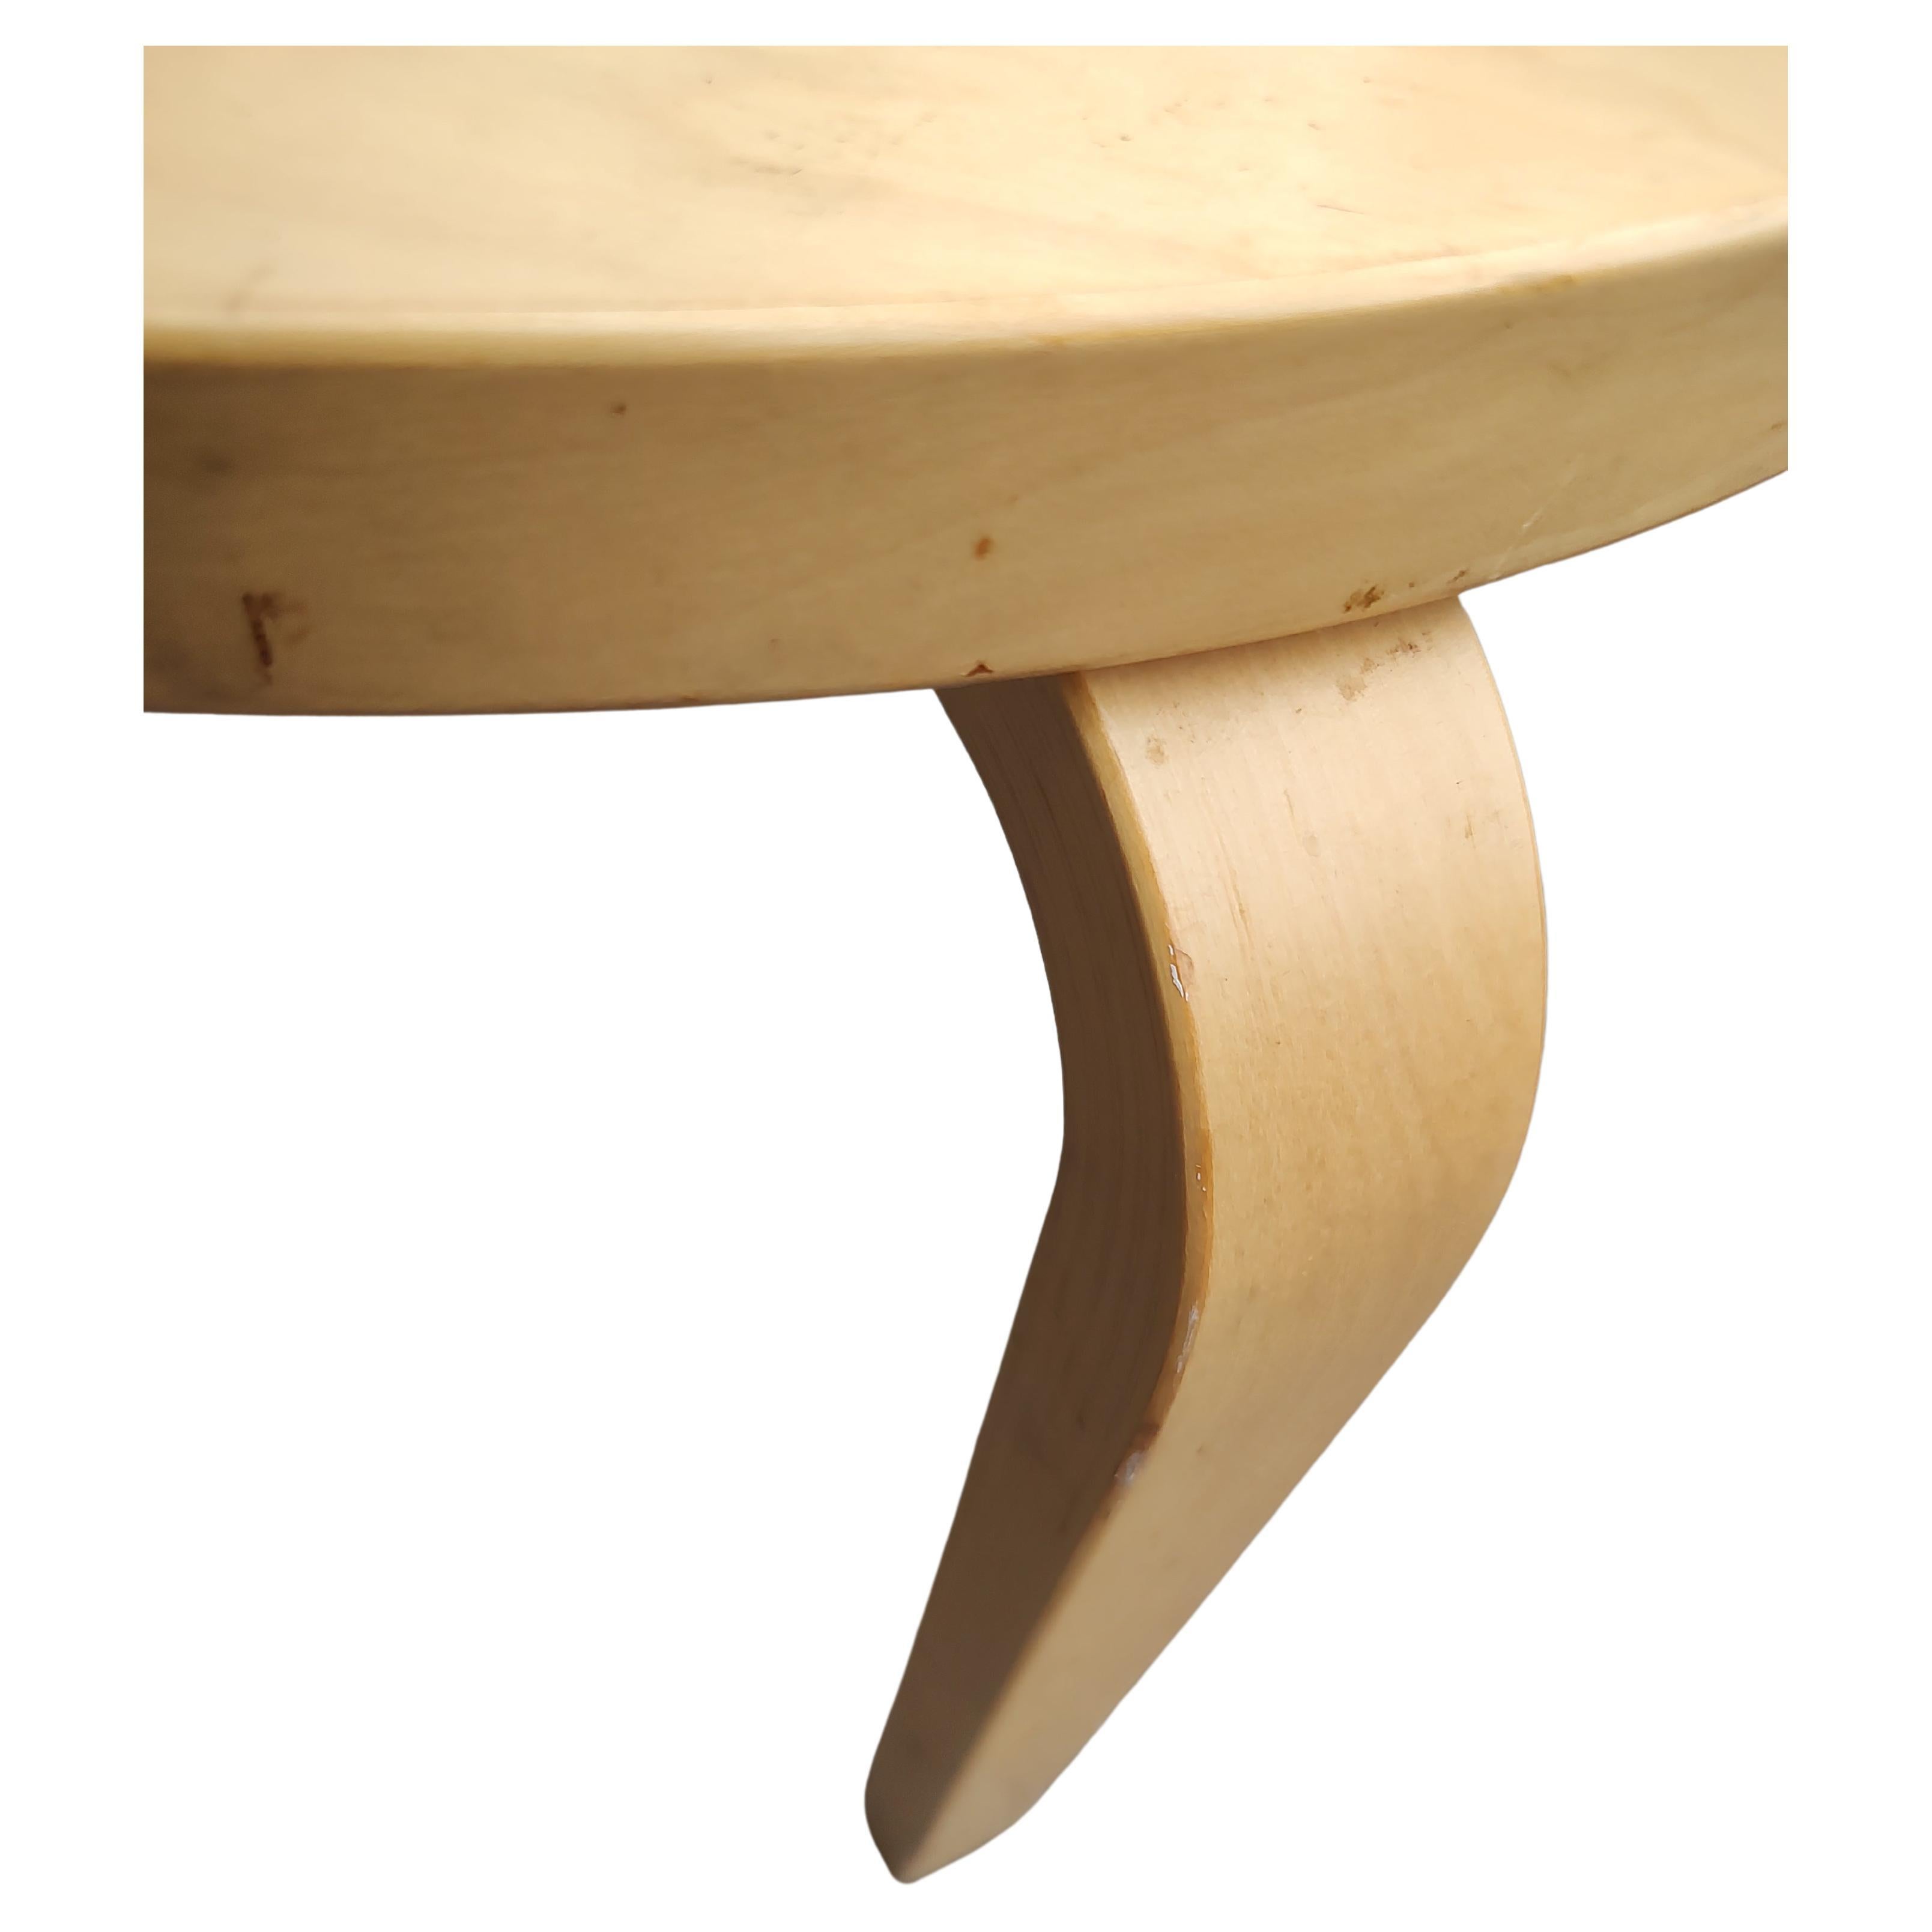 Un design simple et élégant de l'emblématique Alvar Aalto pour artek. Plateau rond en bouleau d'environ 19 de diamètre pour une hauteur de 17,5, une bonne taille à utiliser dans plusieurs endroits. En très bon état, avec une usure minimale.